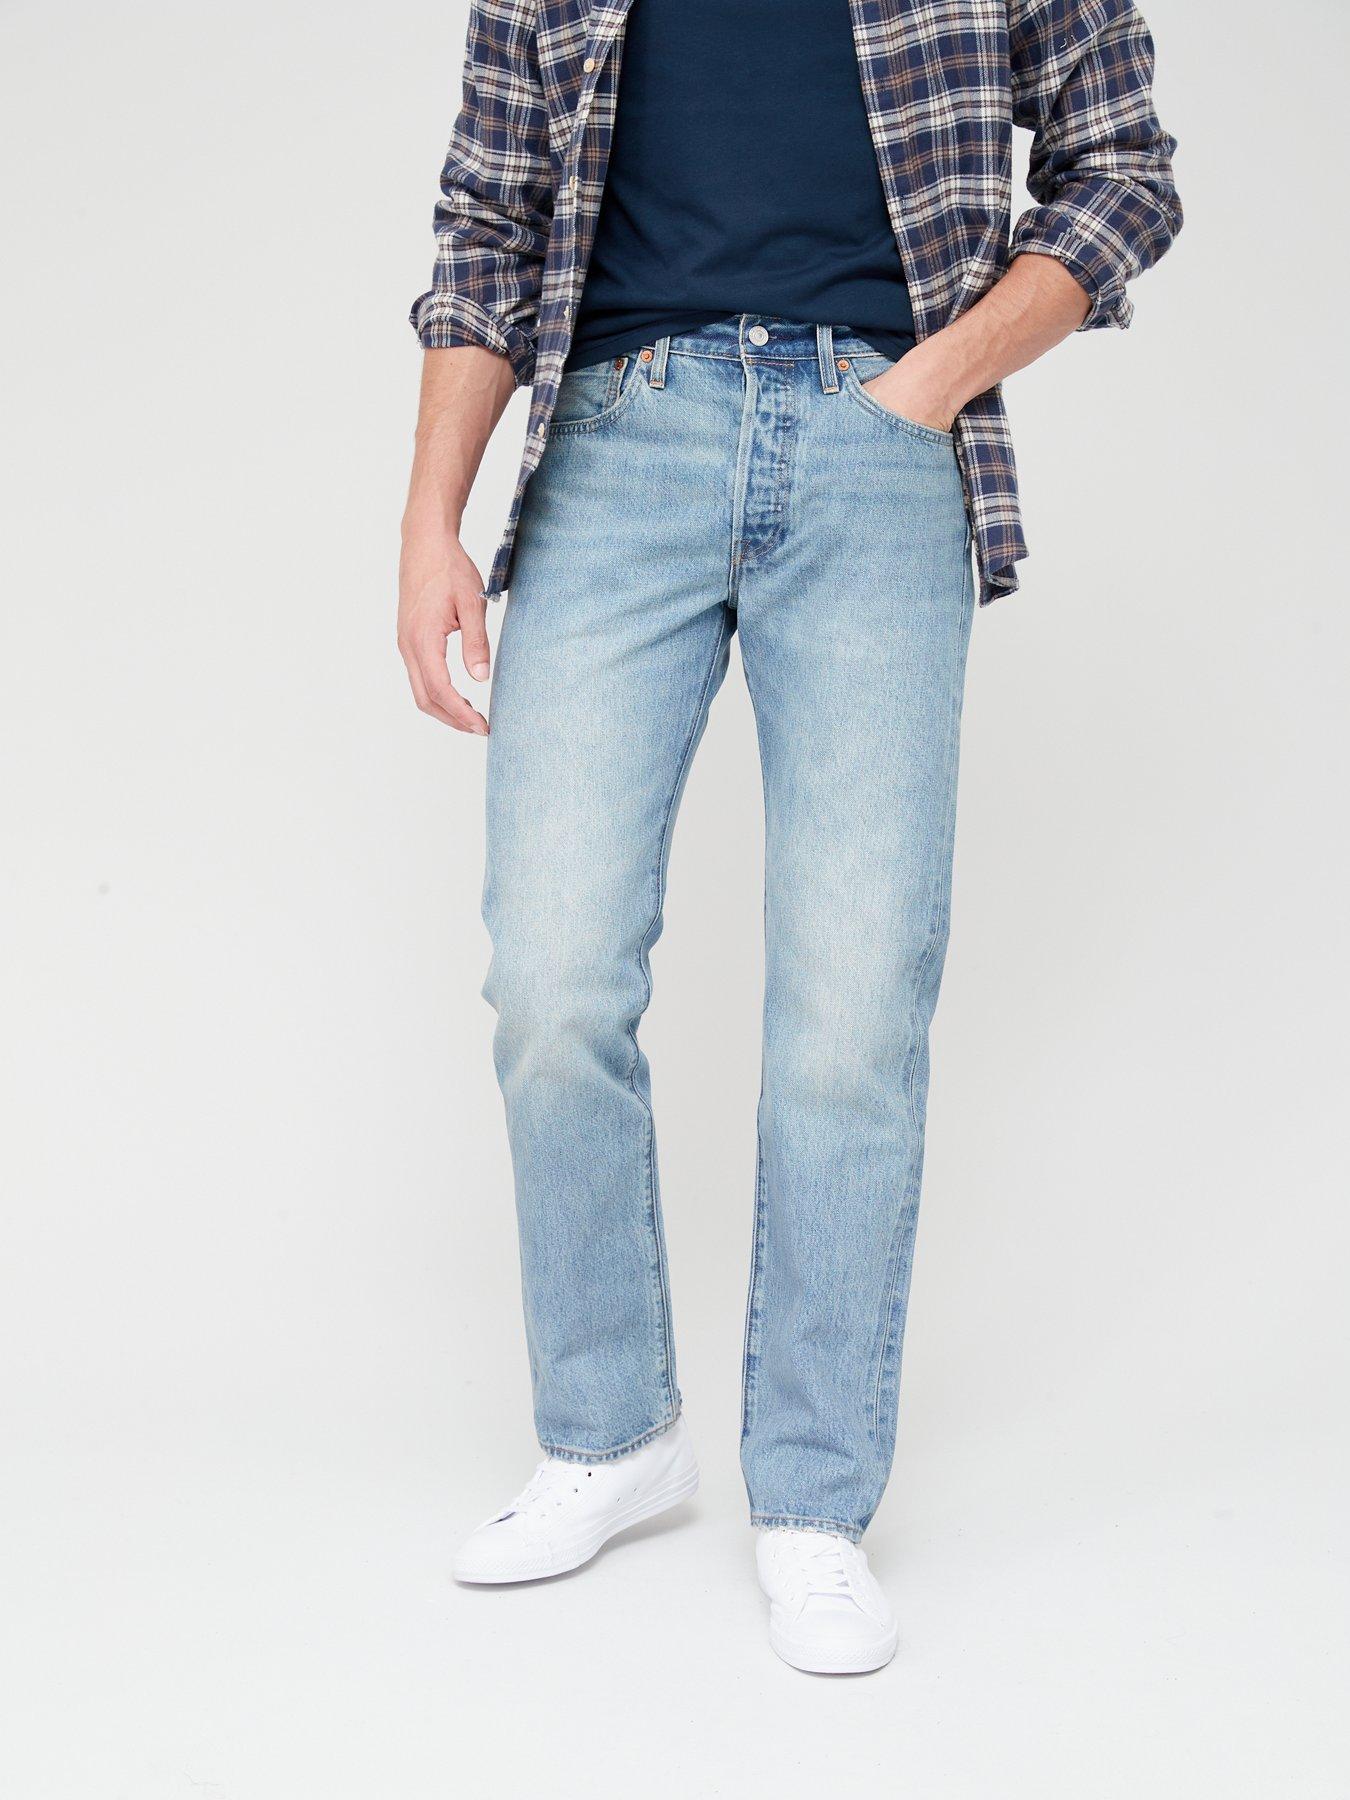 Levi's 501 Original Straight Fit Jeans - Light Wash Blue 